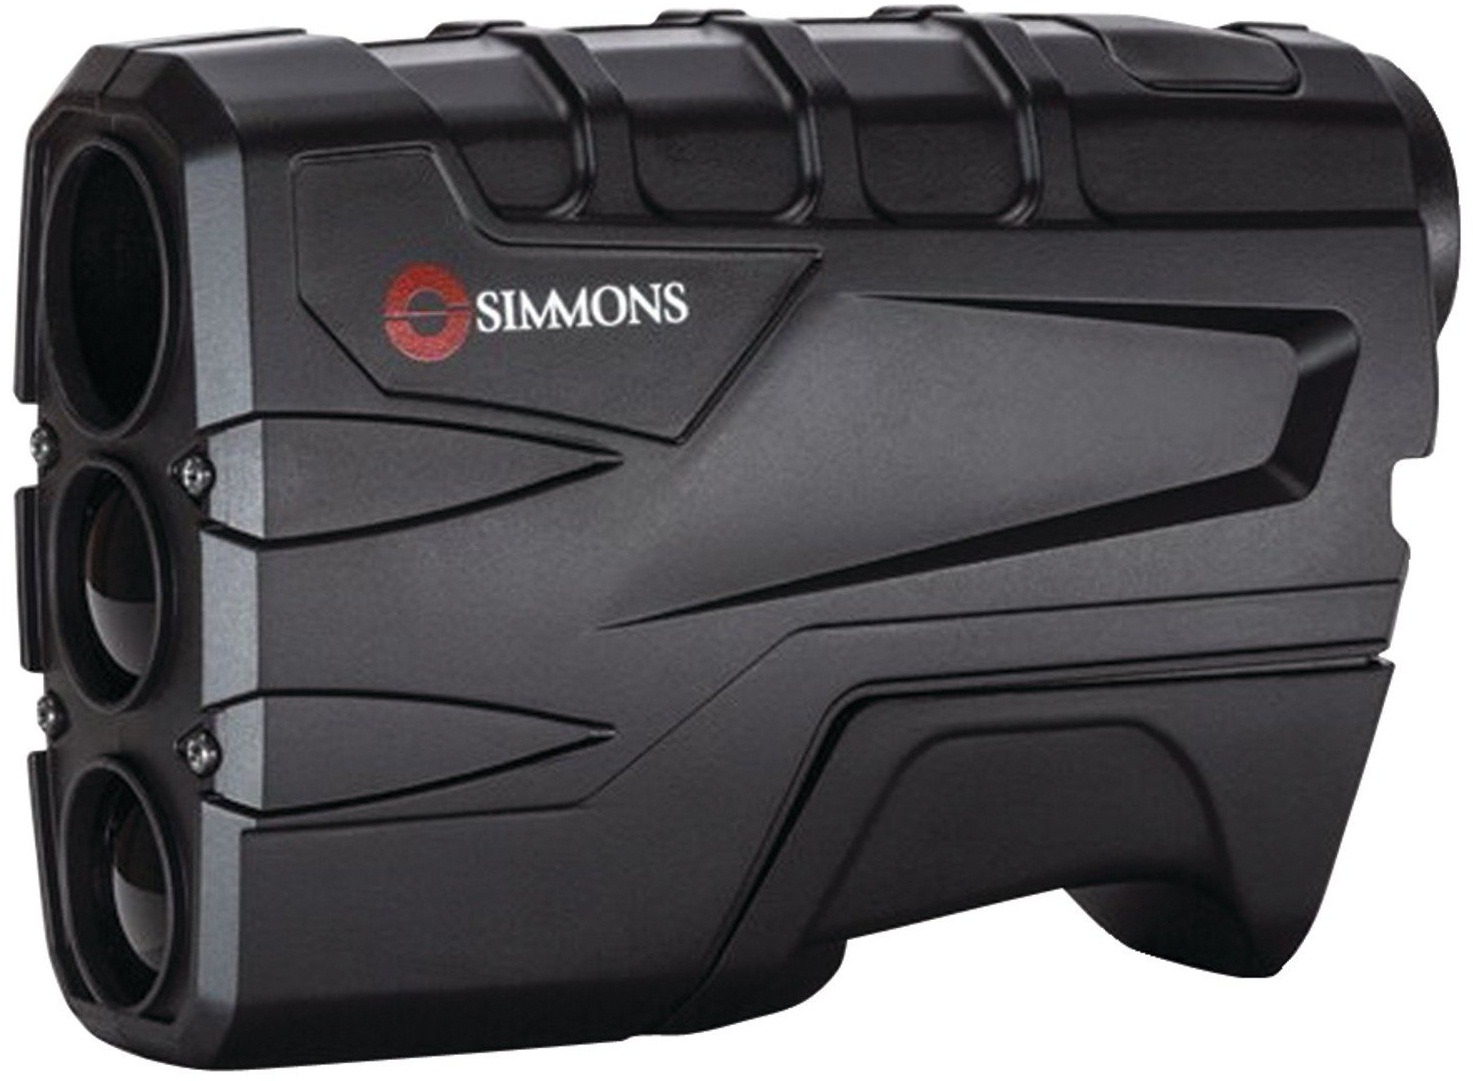 Simmons 801600 Volt 600 Laser Rangefinder Review